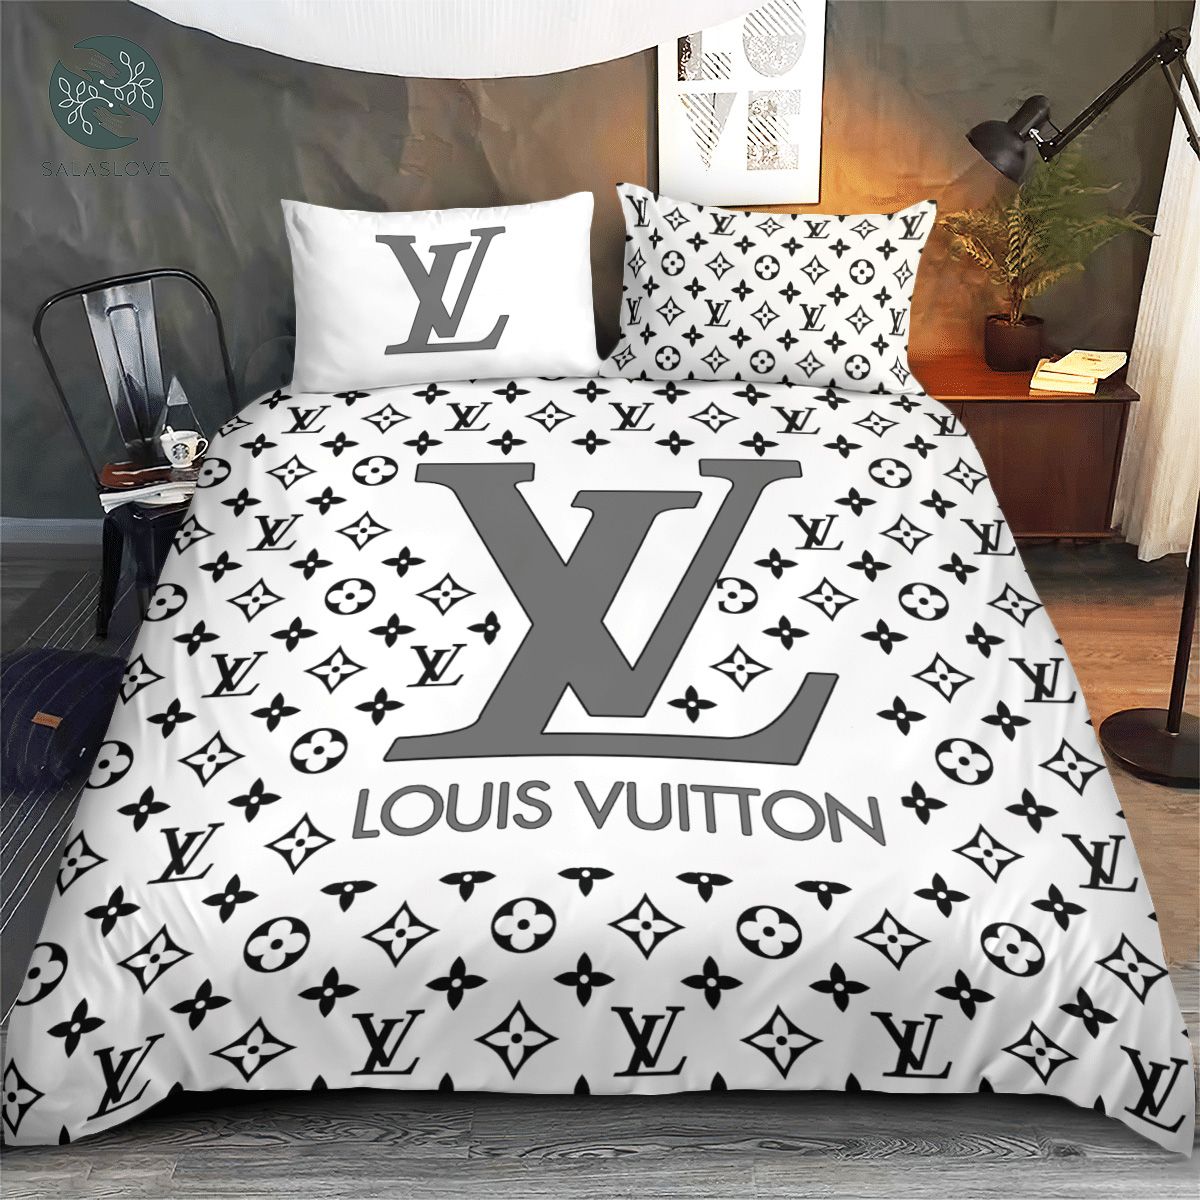 Louis Vuitton Limited Edition 3D Bedding Sets